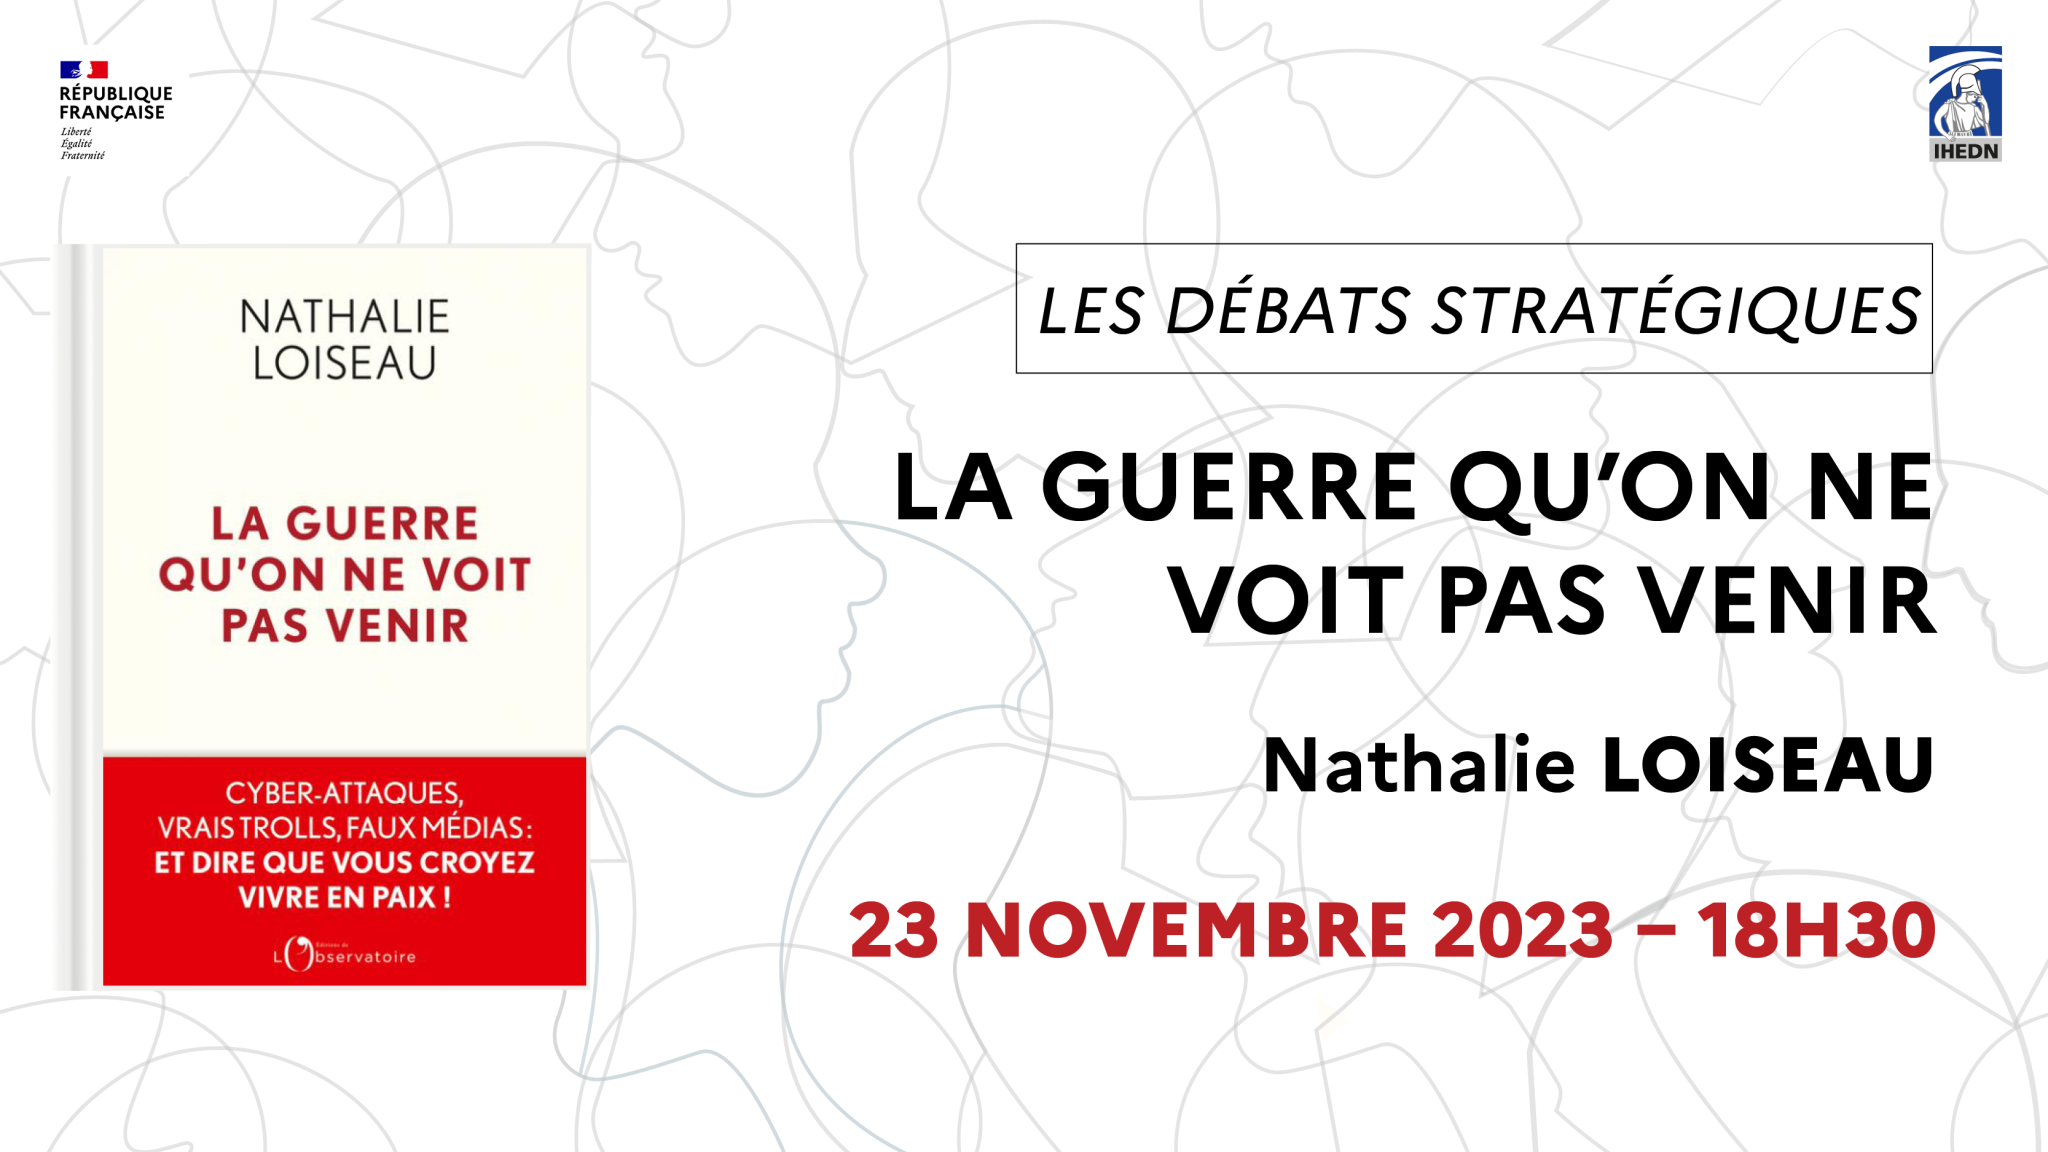 Agenda : 23 novembre "Nathalie Loiseau, La guerre qu’on ne voit pas venir"